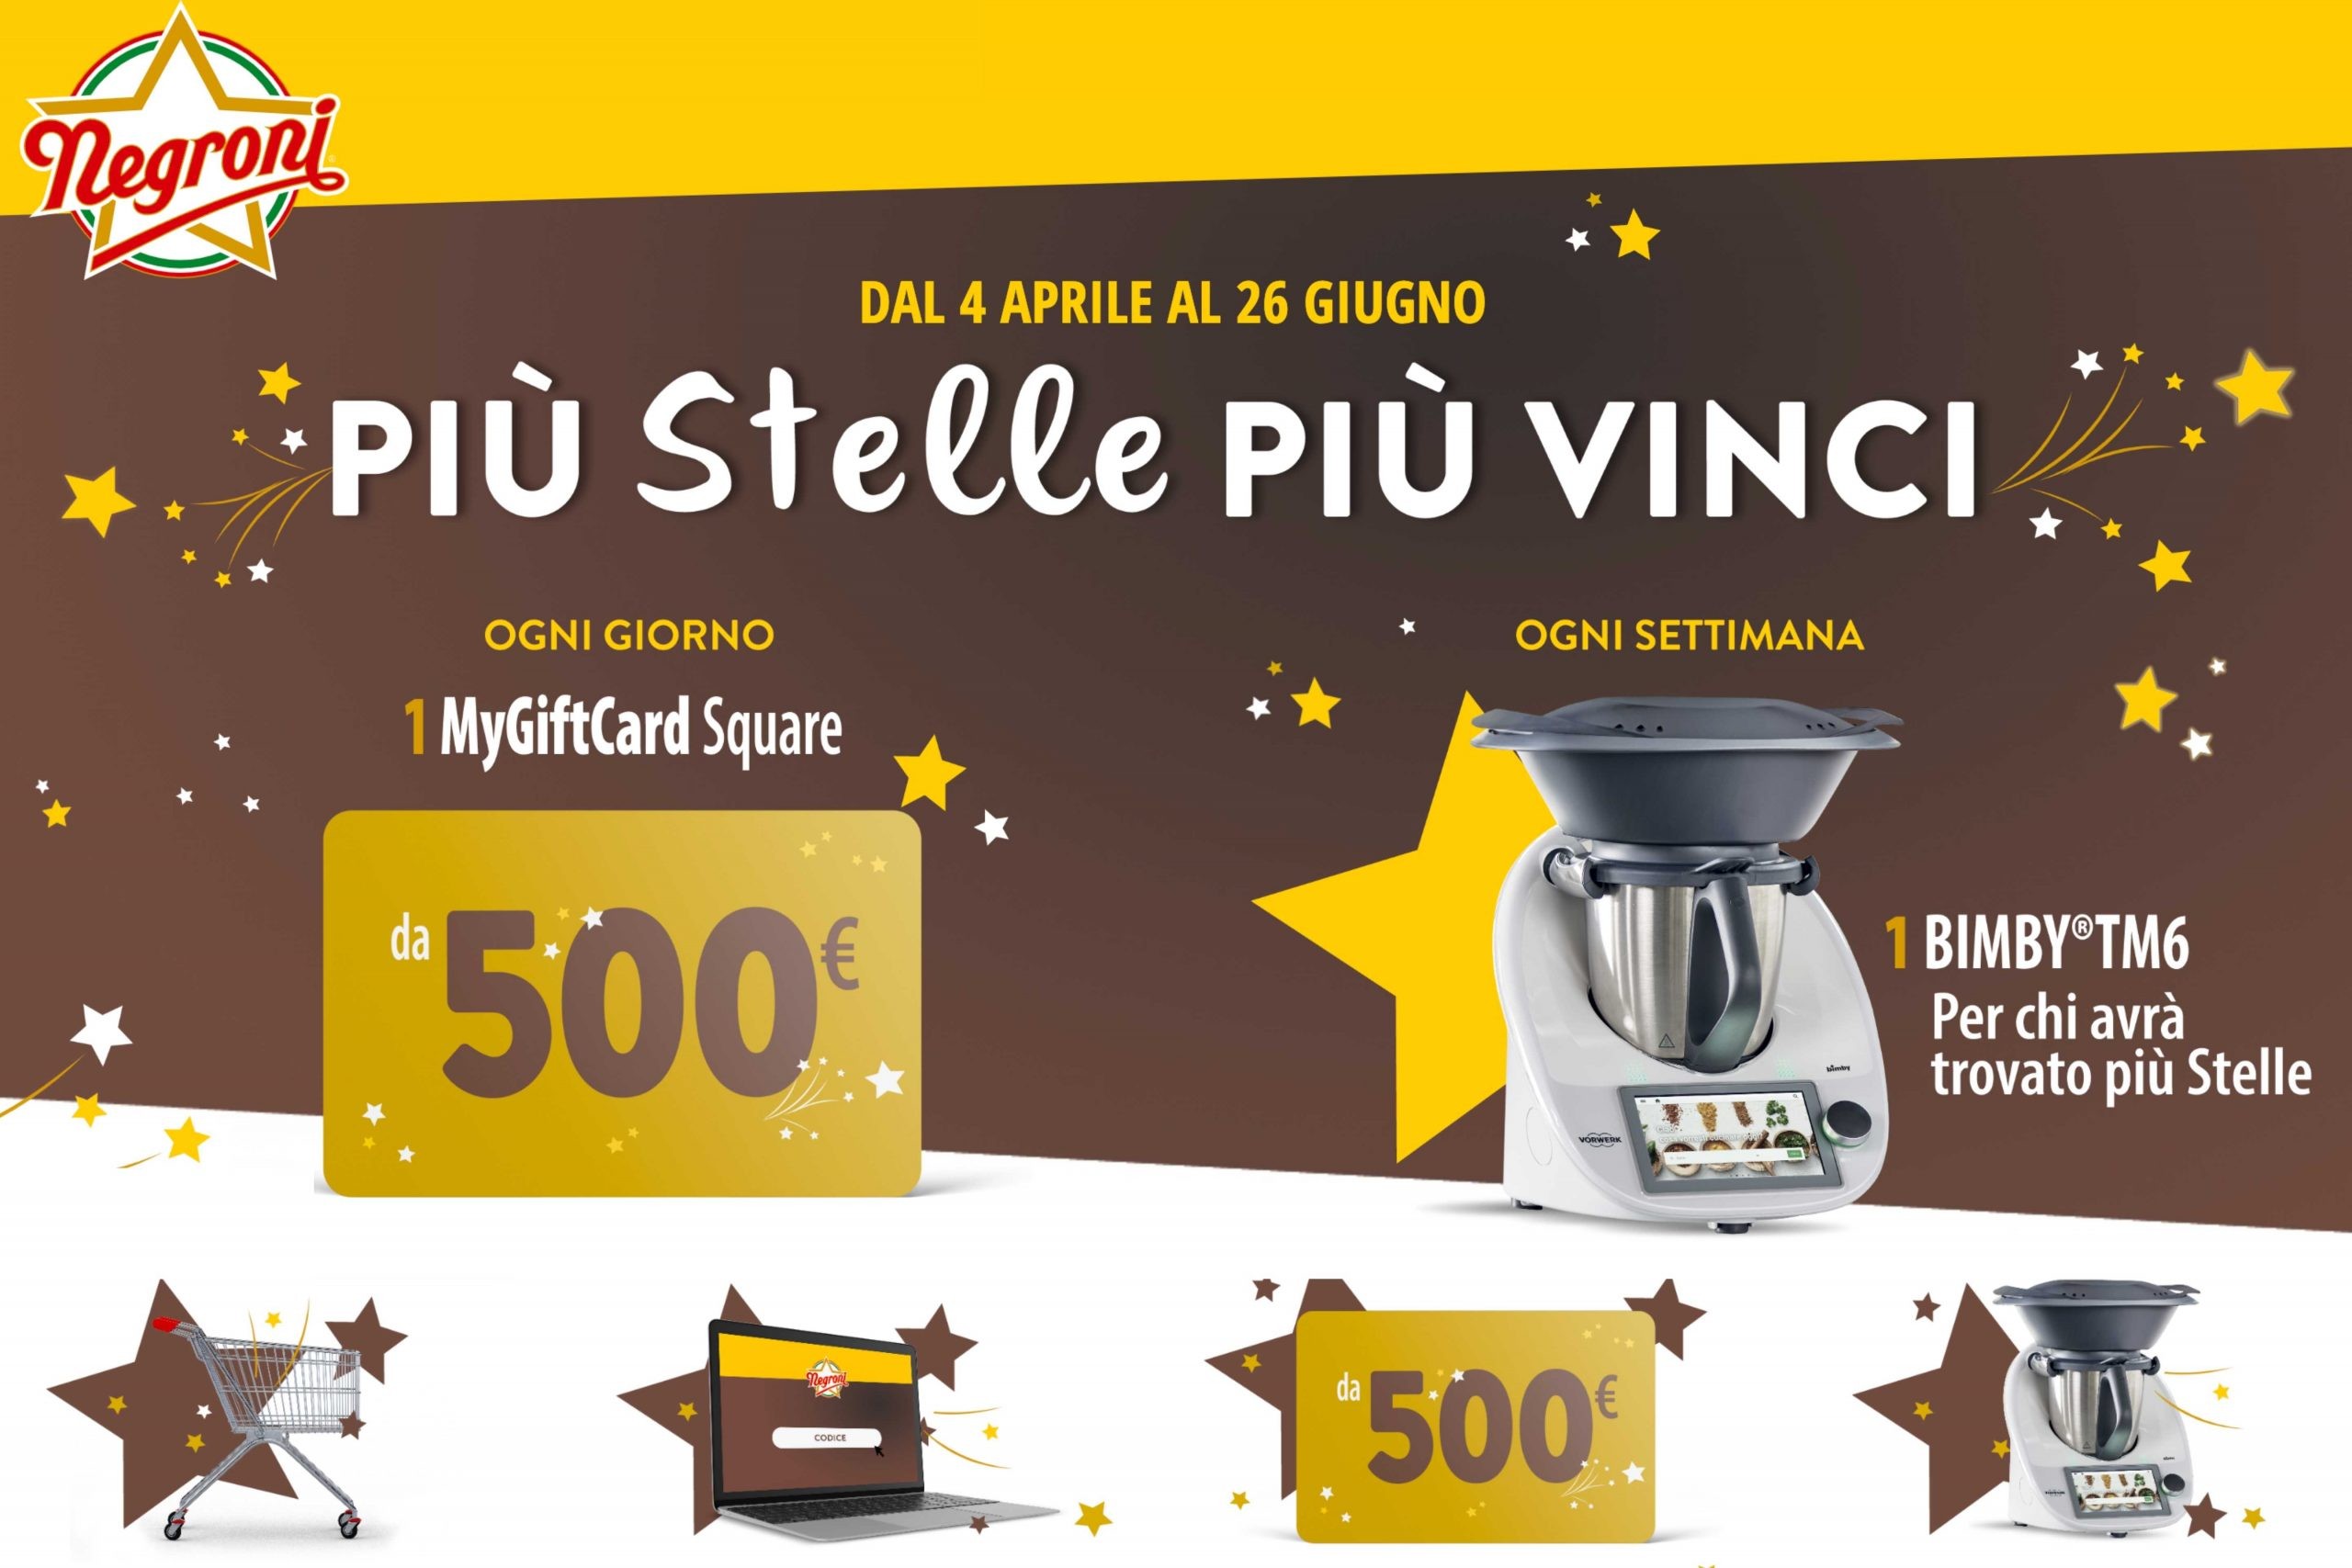 Concorso Negroni “Più stelle più vinci”: come vincere un buono da 500€ e un Bimby TM6